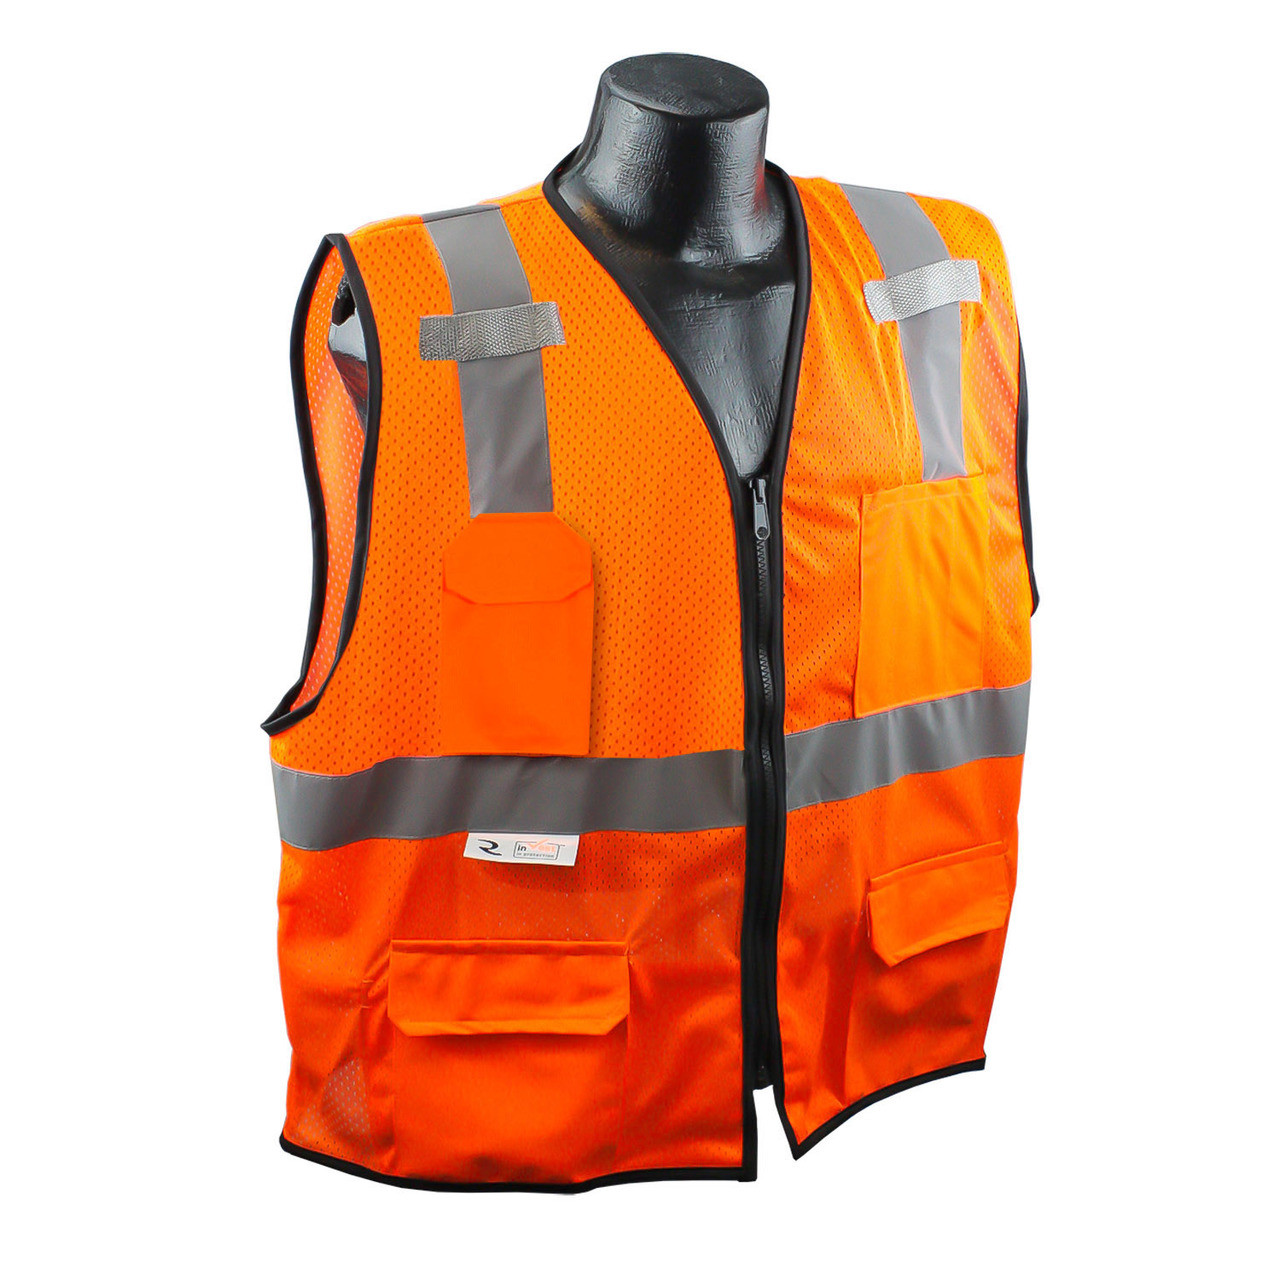 Radians SV7E-2Z Surveyor Class Safety Vest Industrial Safety Products